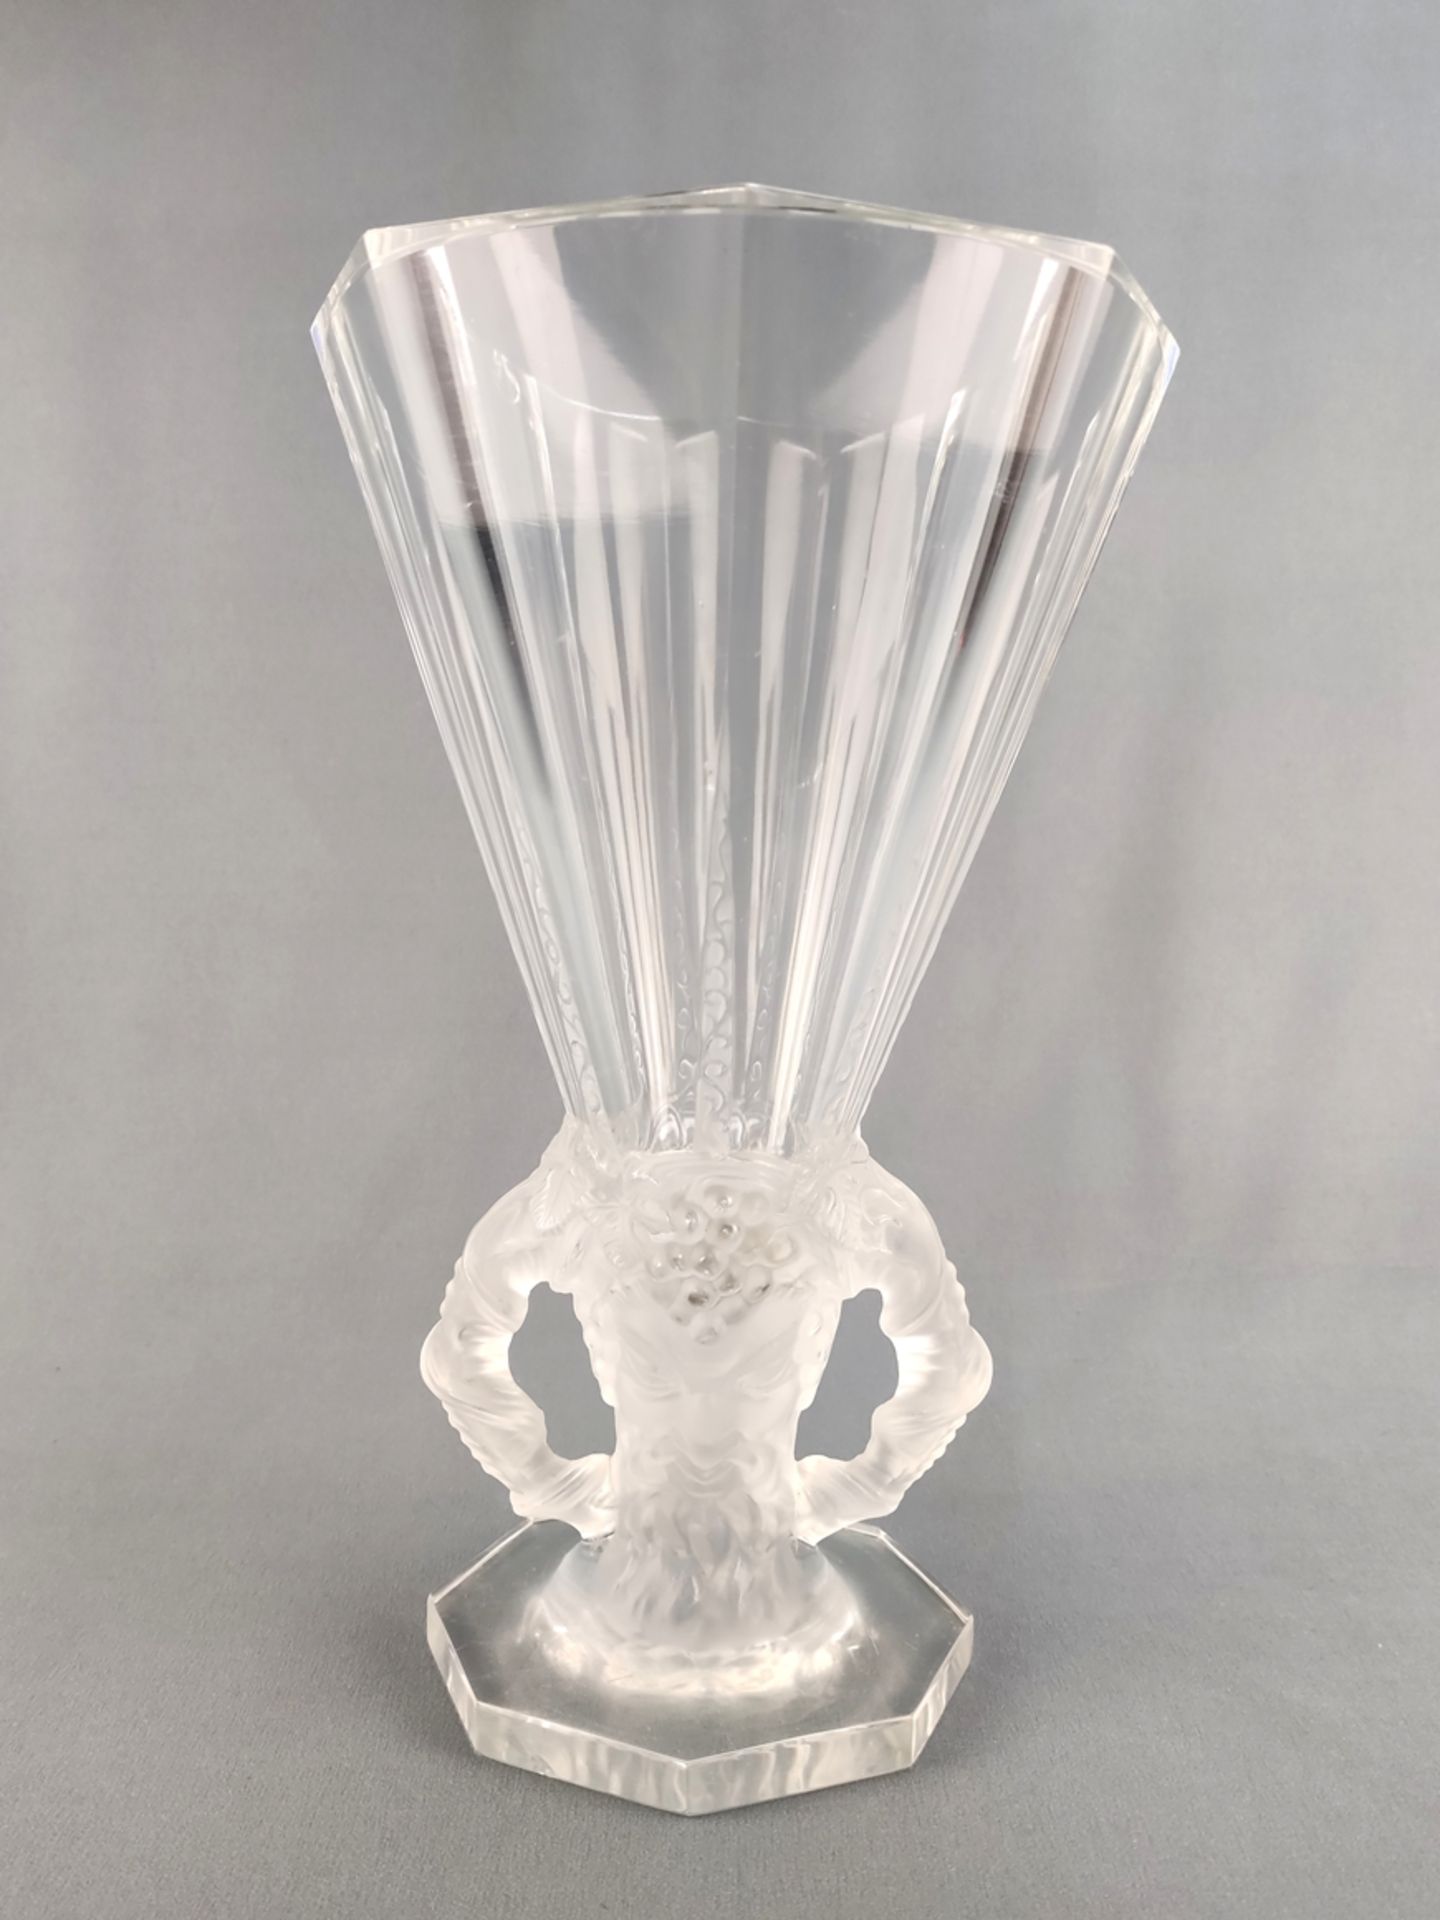 Vase "Faune", René Lalique, farbloses Glas, teilweise mattiert, konische Form, am Hals mit zwei hal